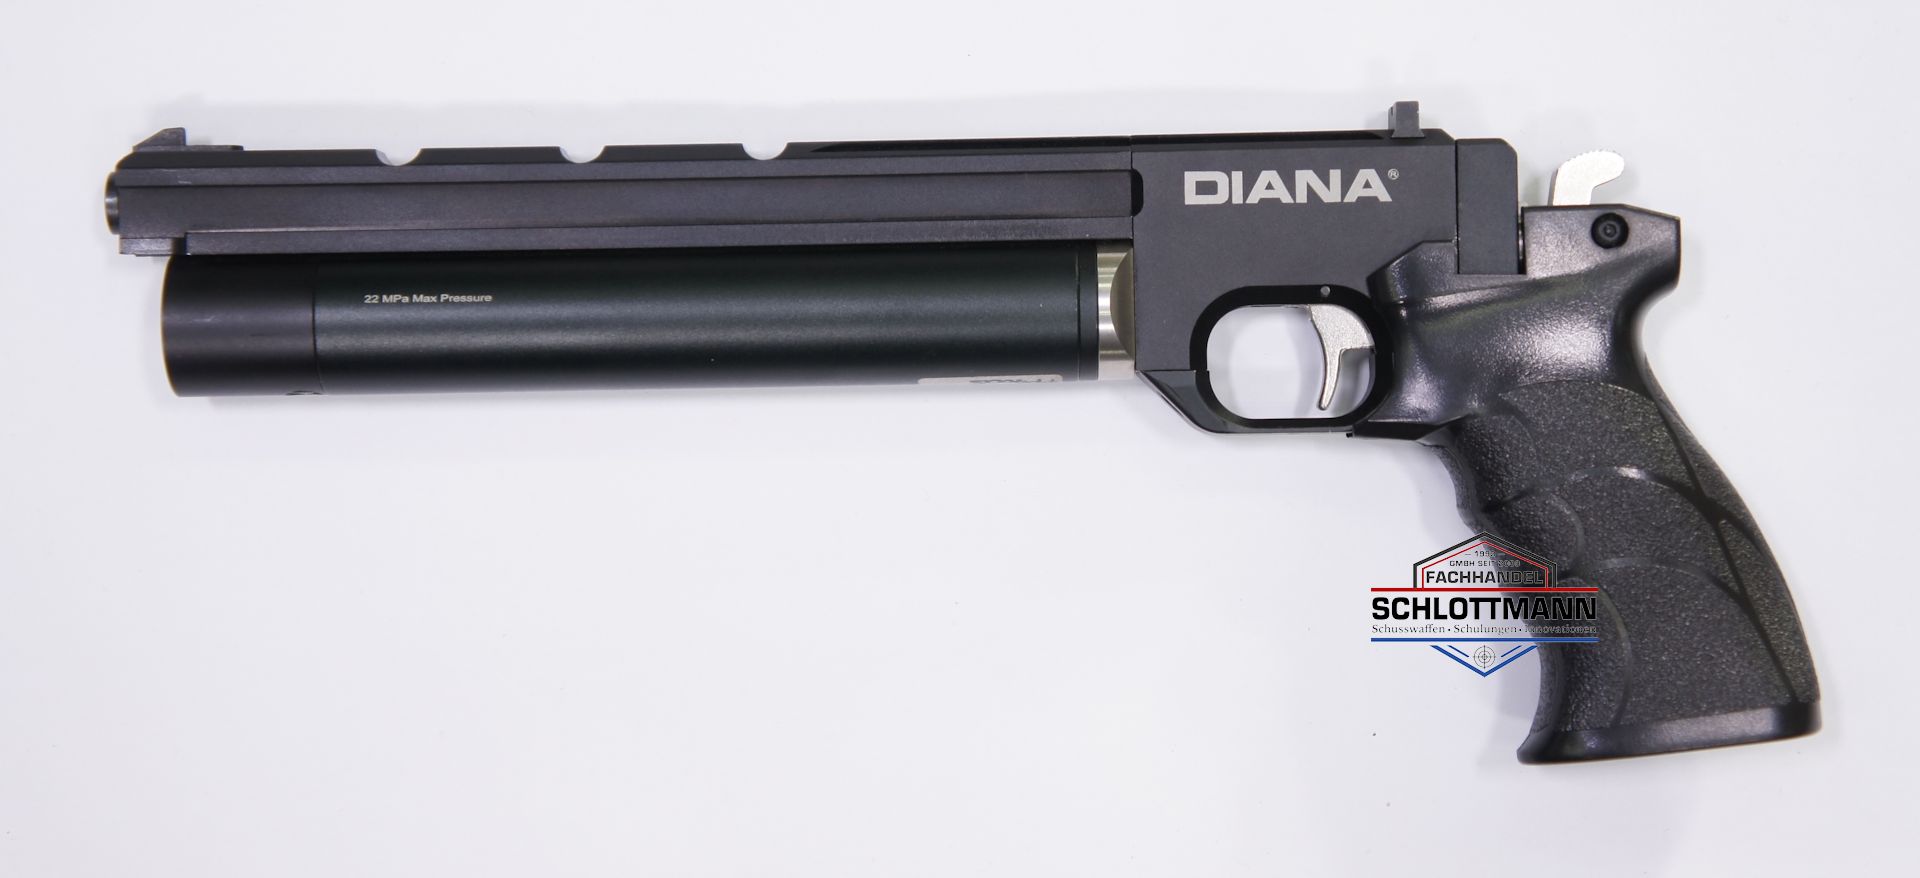 Luftpistole Artemis PP700S kommt unter dem Namen Airmax auf den deutschen Markt, Kaliber 4,5